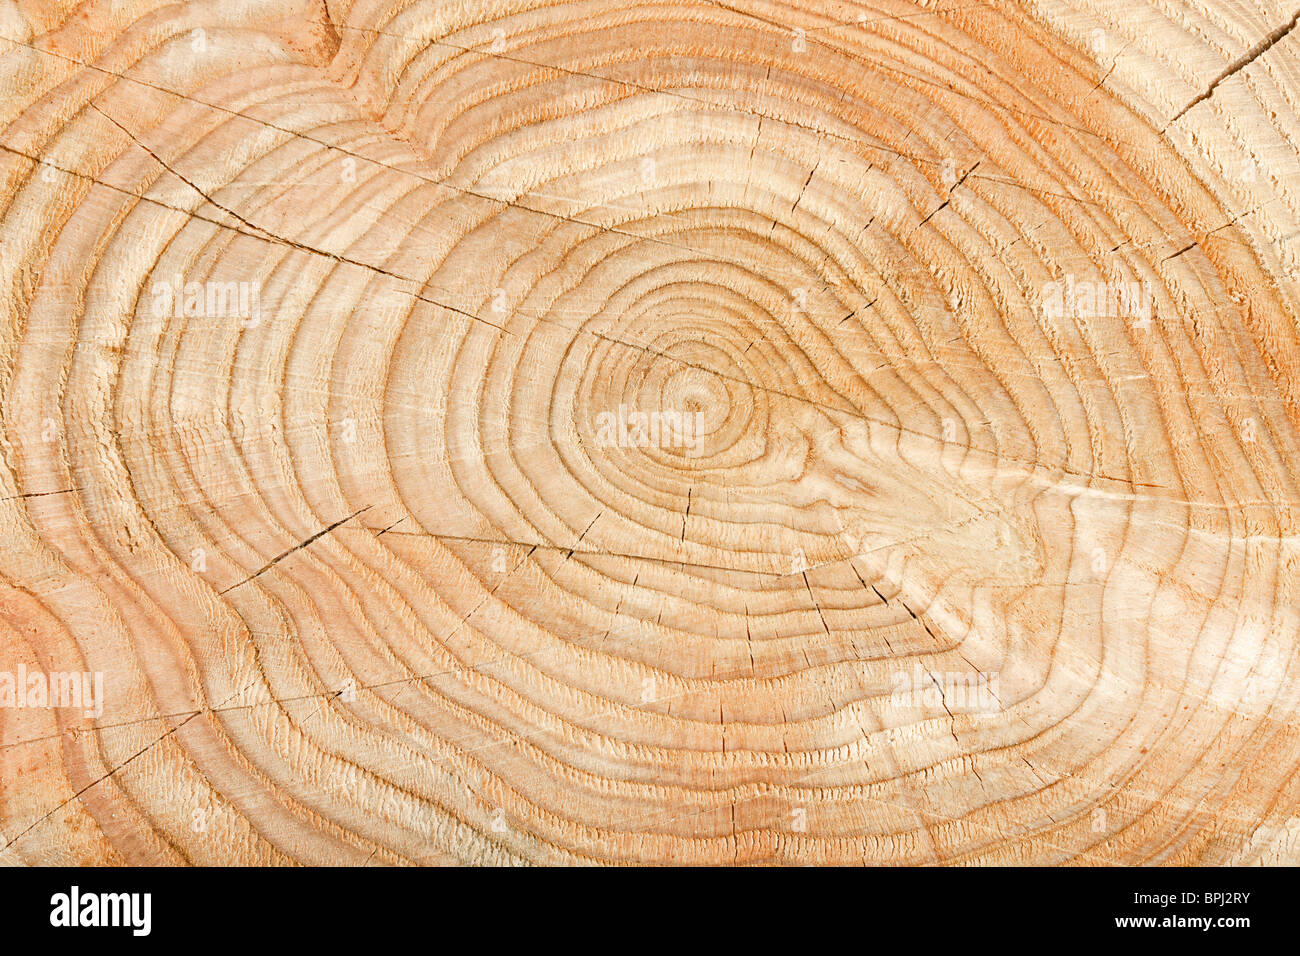 Close-up d'une section transversale d'une souche d'arbre montrant les cercles de vieillissement Banque D'Images